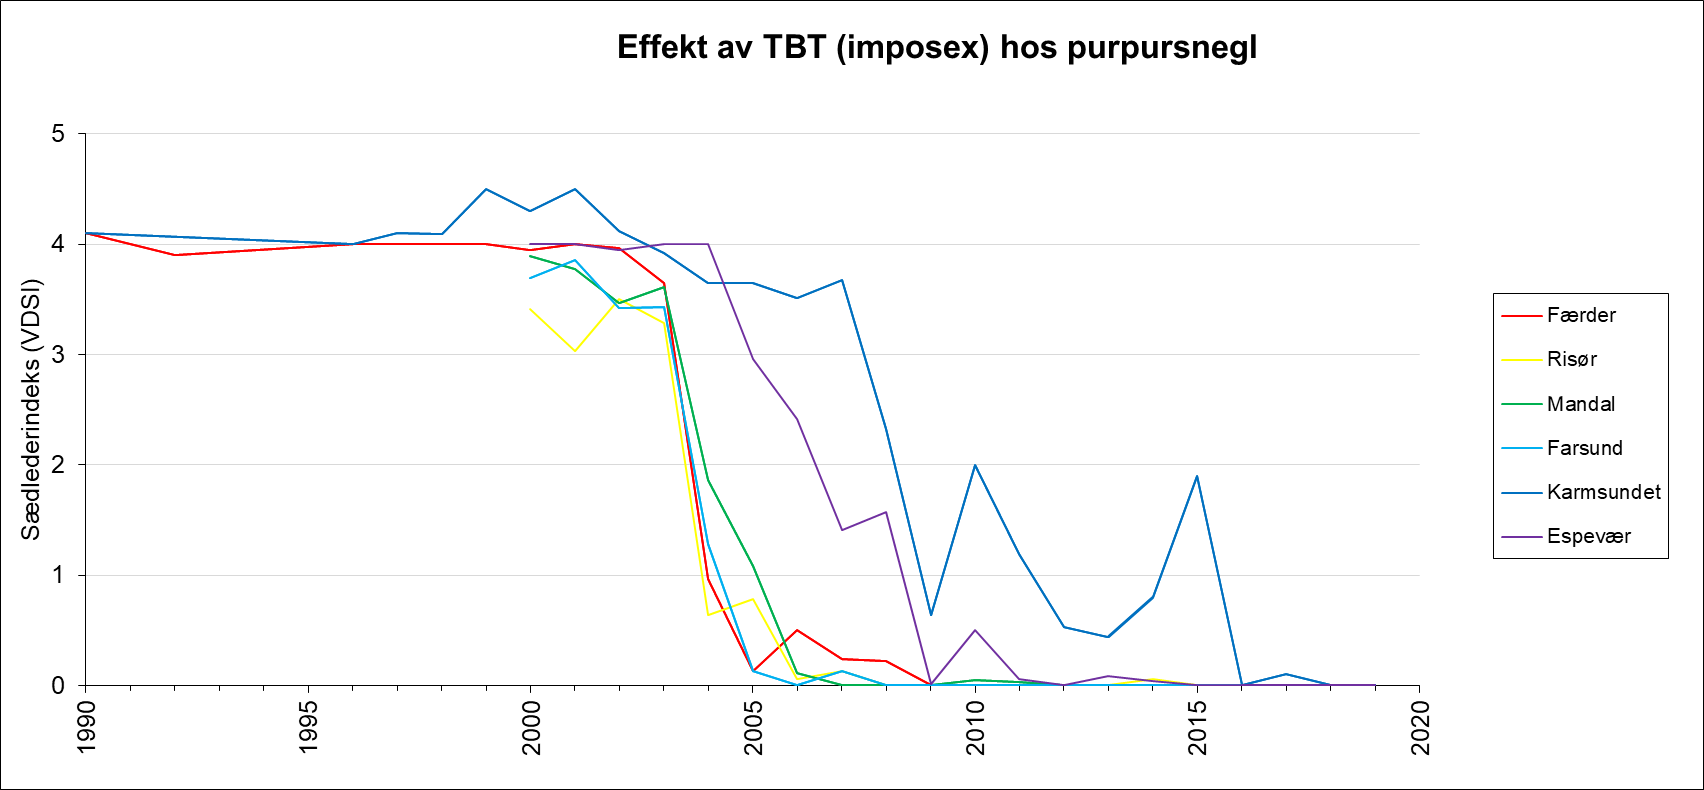 Utvikling over tid av effekten av TBT i form av imposex hos purpursnegl, målt i ulike områder.